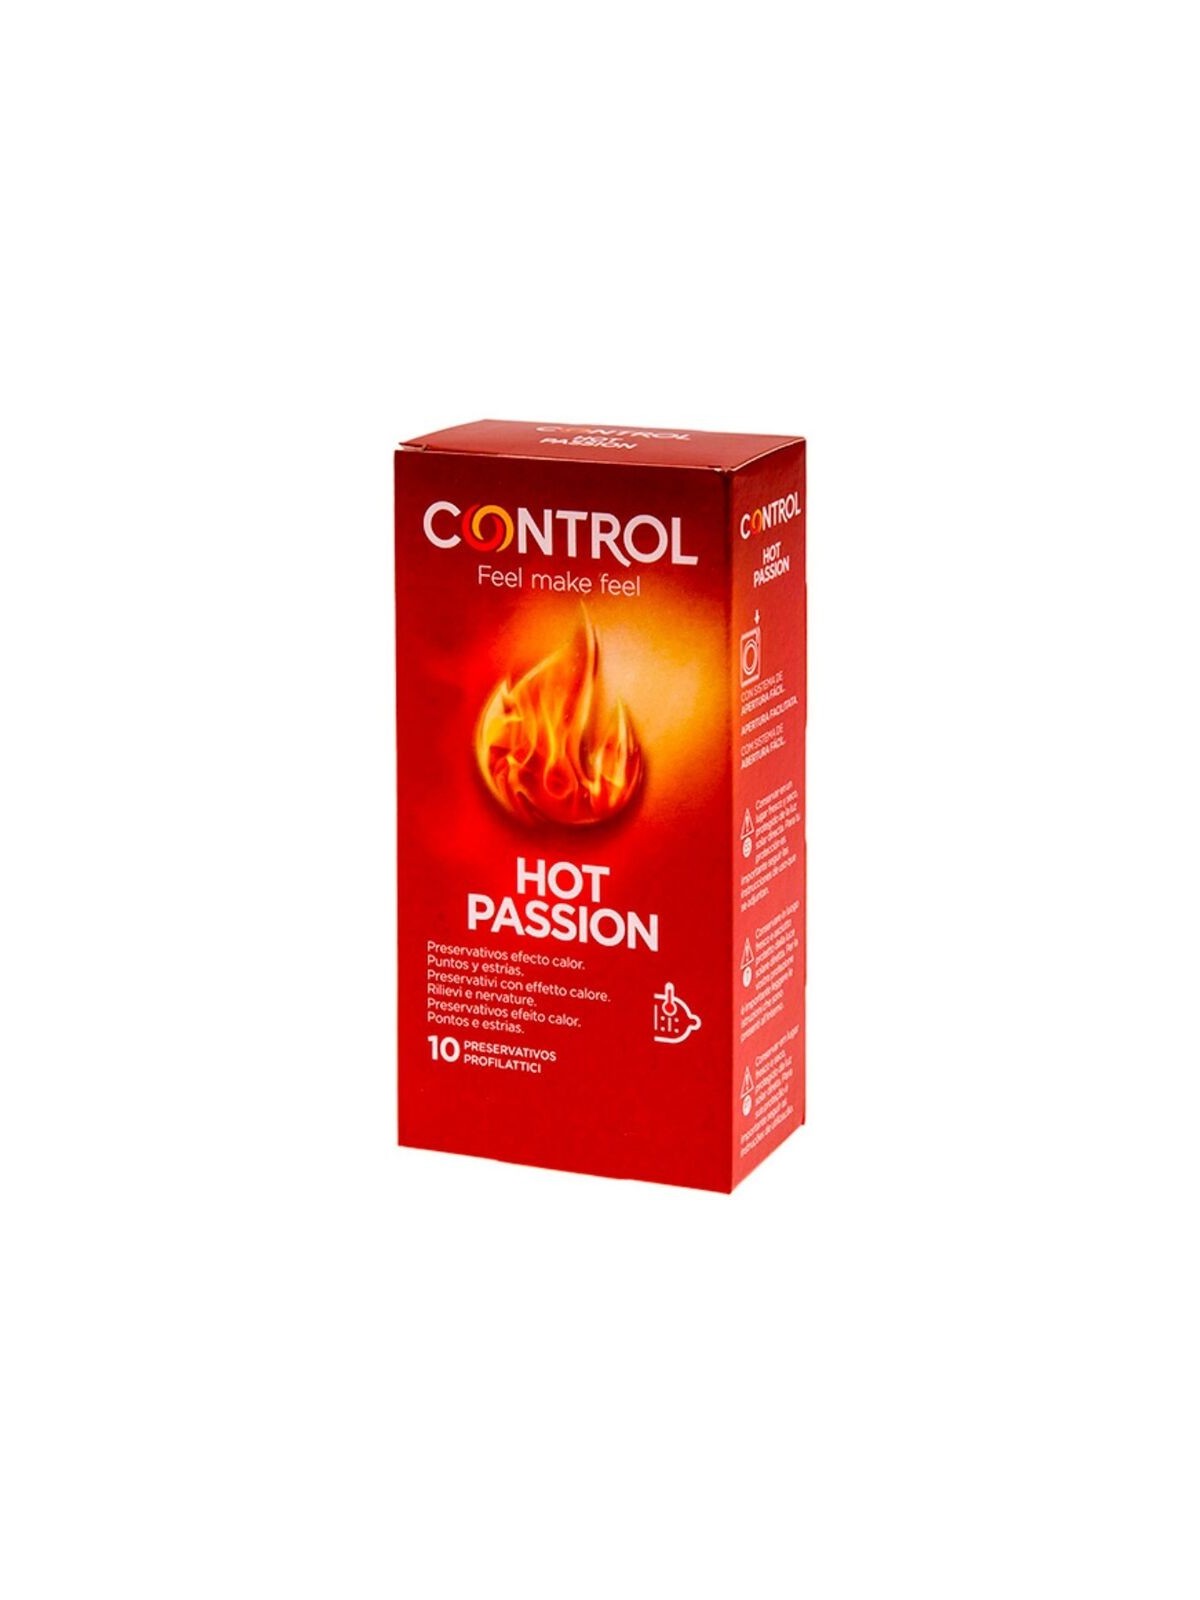 Control Hot Passion Preservativos Efecto Calor 10 Unidades - Comprar Condones especiales Control - Preservativos especiales (1)